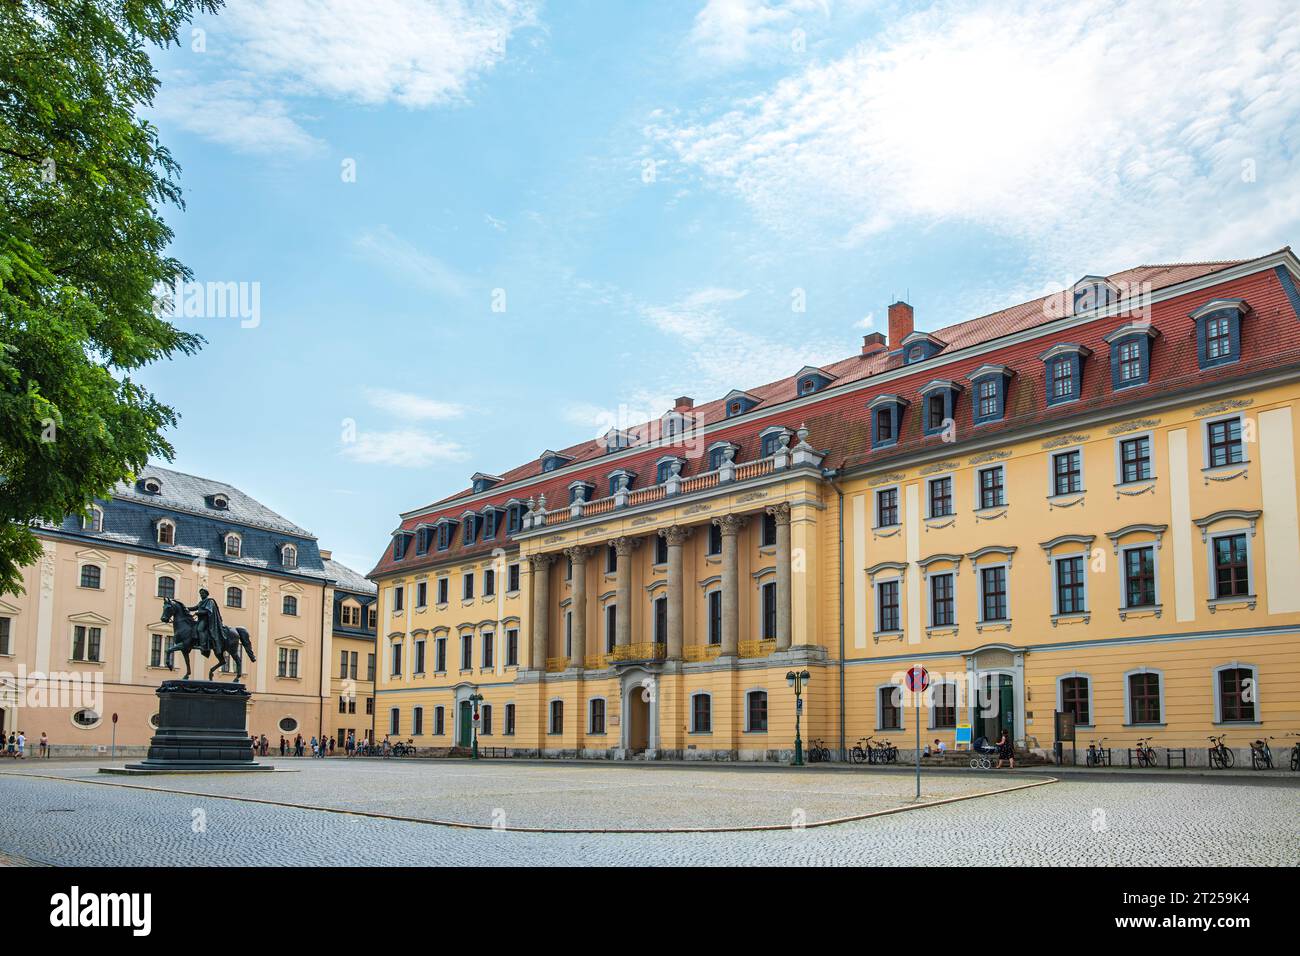 Maison princière de Weimar, ancien palais et bâtiment de l'État, depuis 1951 'Université de musique Franz Liszt', Weimar, Thuringe, Allemagne. Banque D'Images